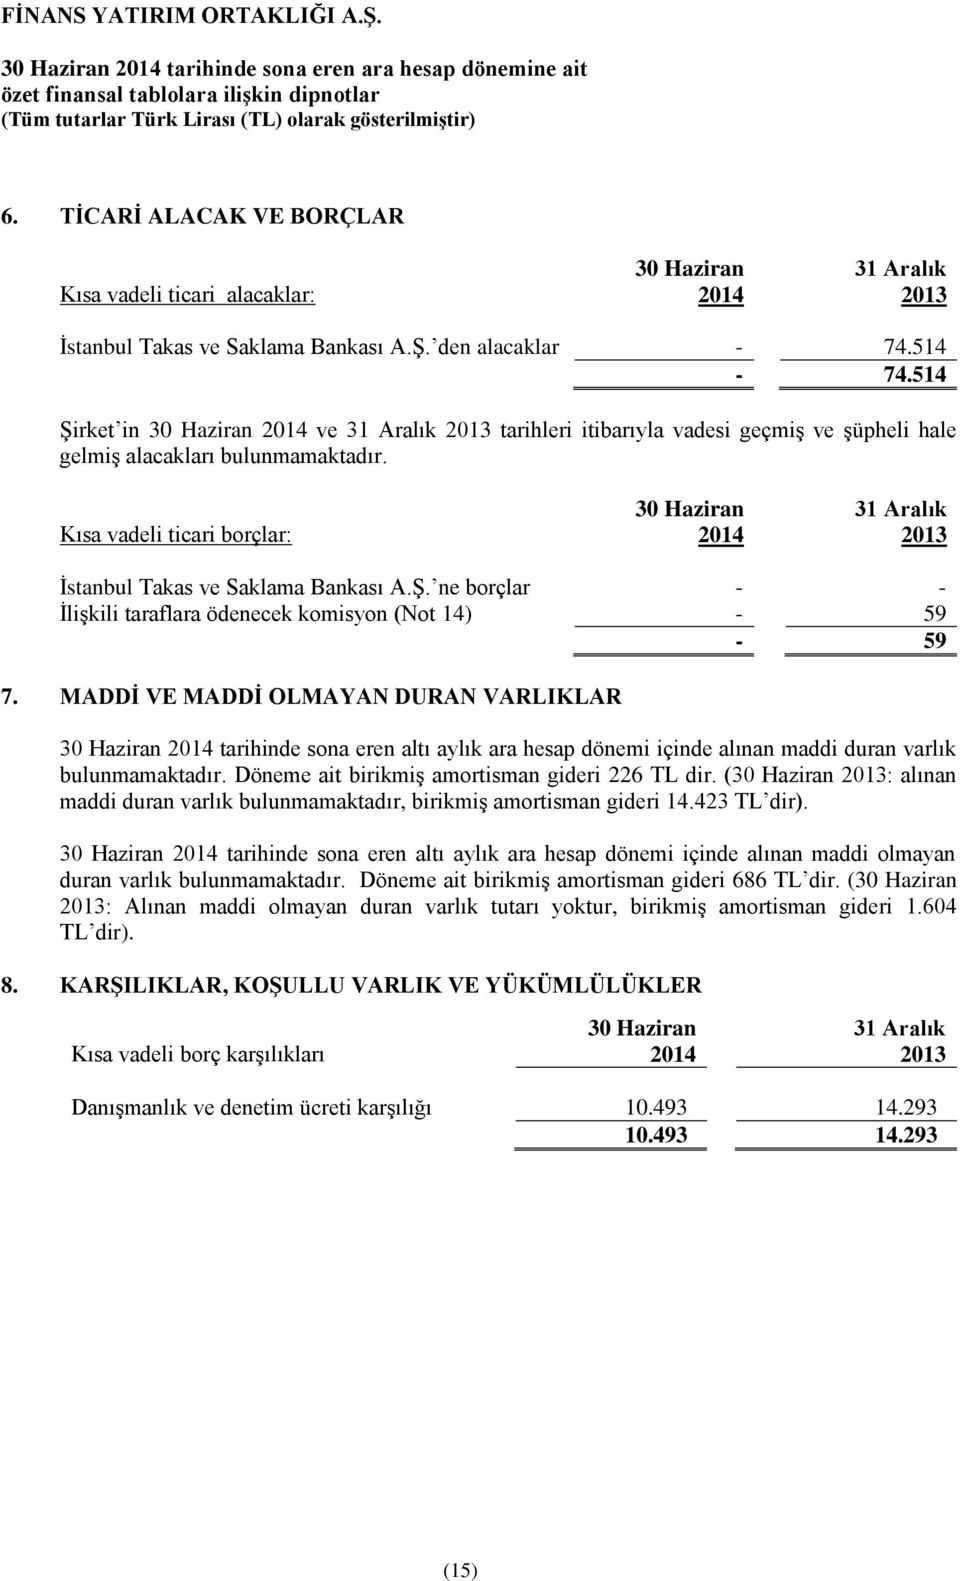 Kısa vadeli ticari borçlar: 2014 31 Aralık 2013 İstanbul Takas ve Saklama Bankası A.Ş. ne borçlar - - İlişkili taraflara ödenecek komisyon (Not 14) - 59-59 7.